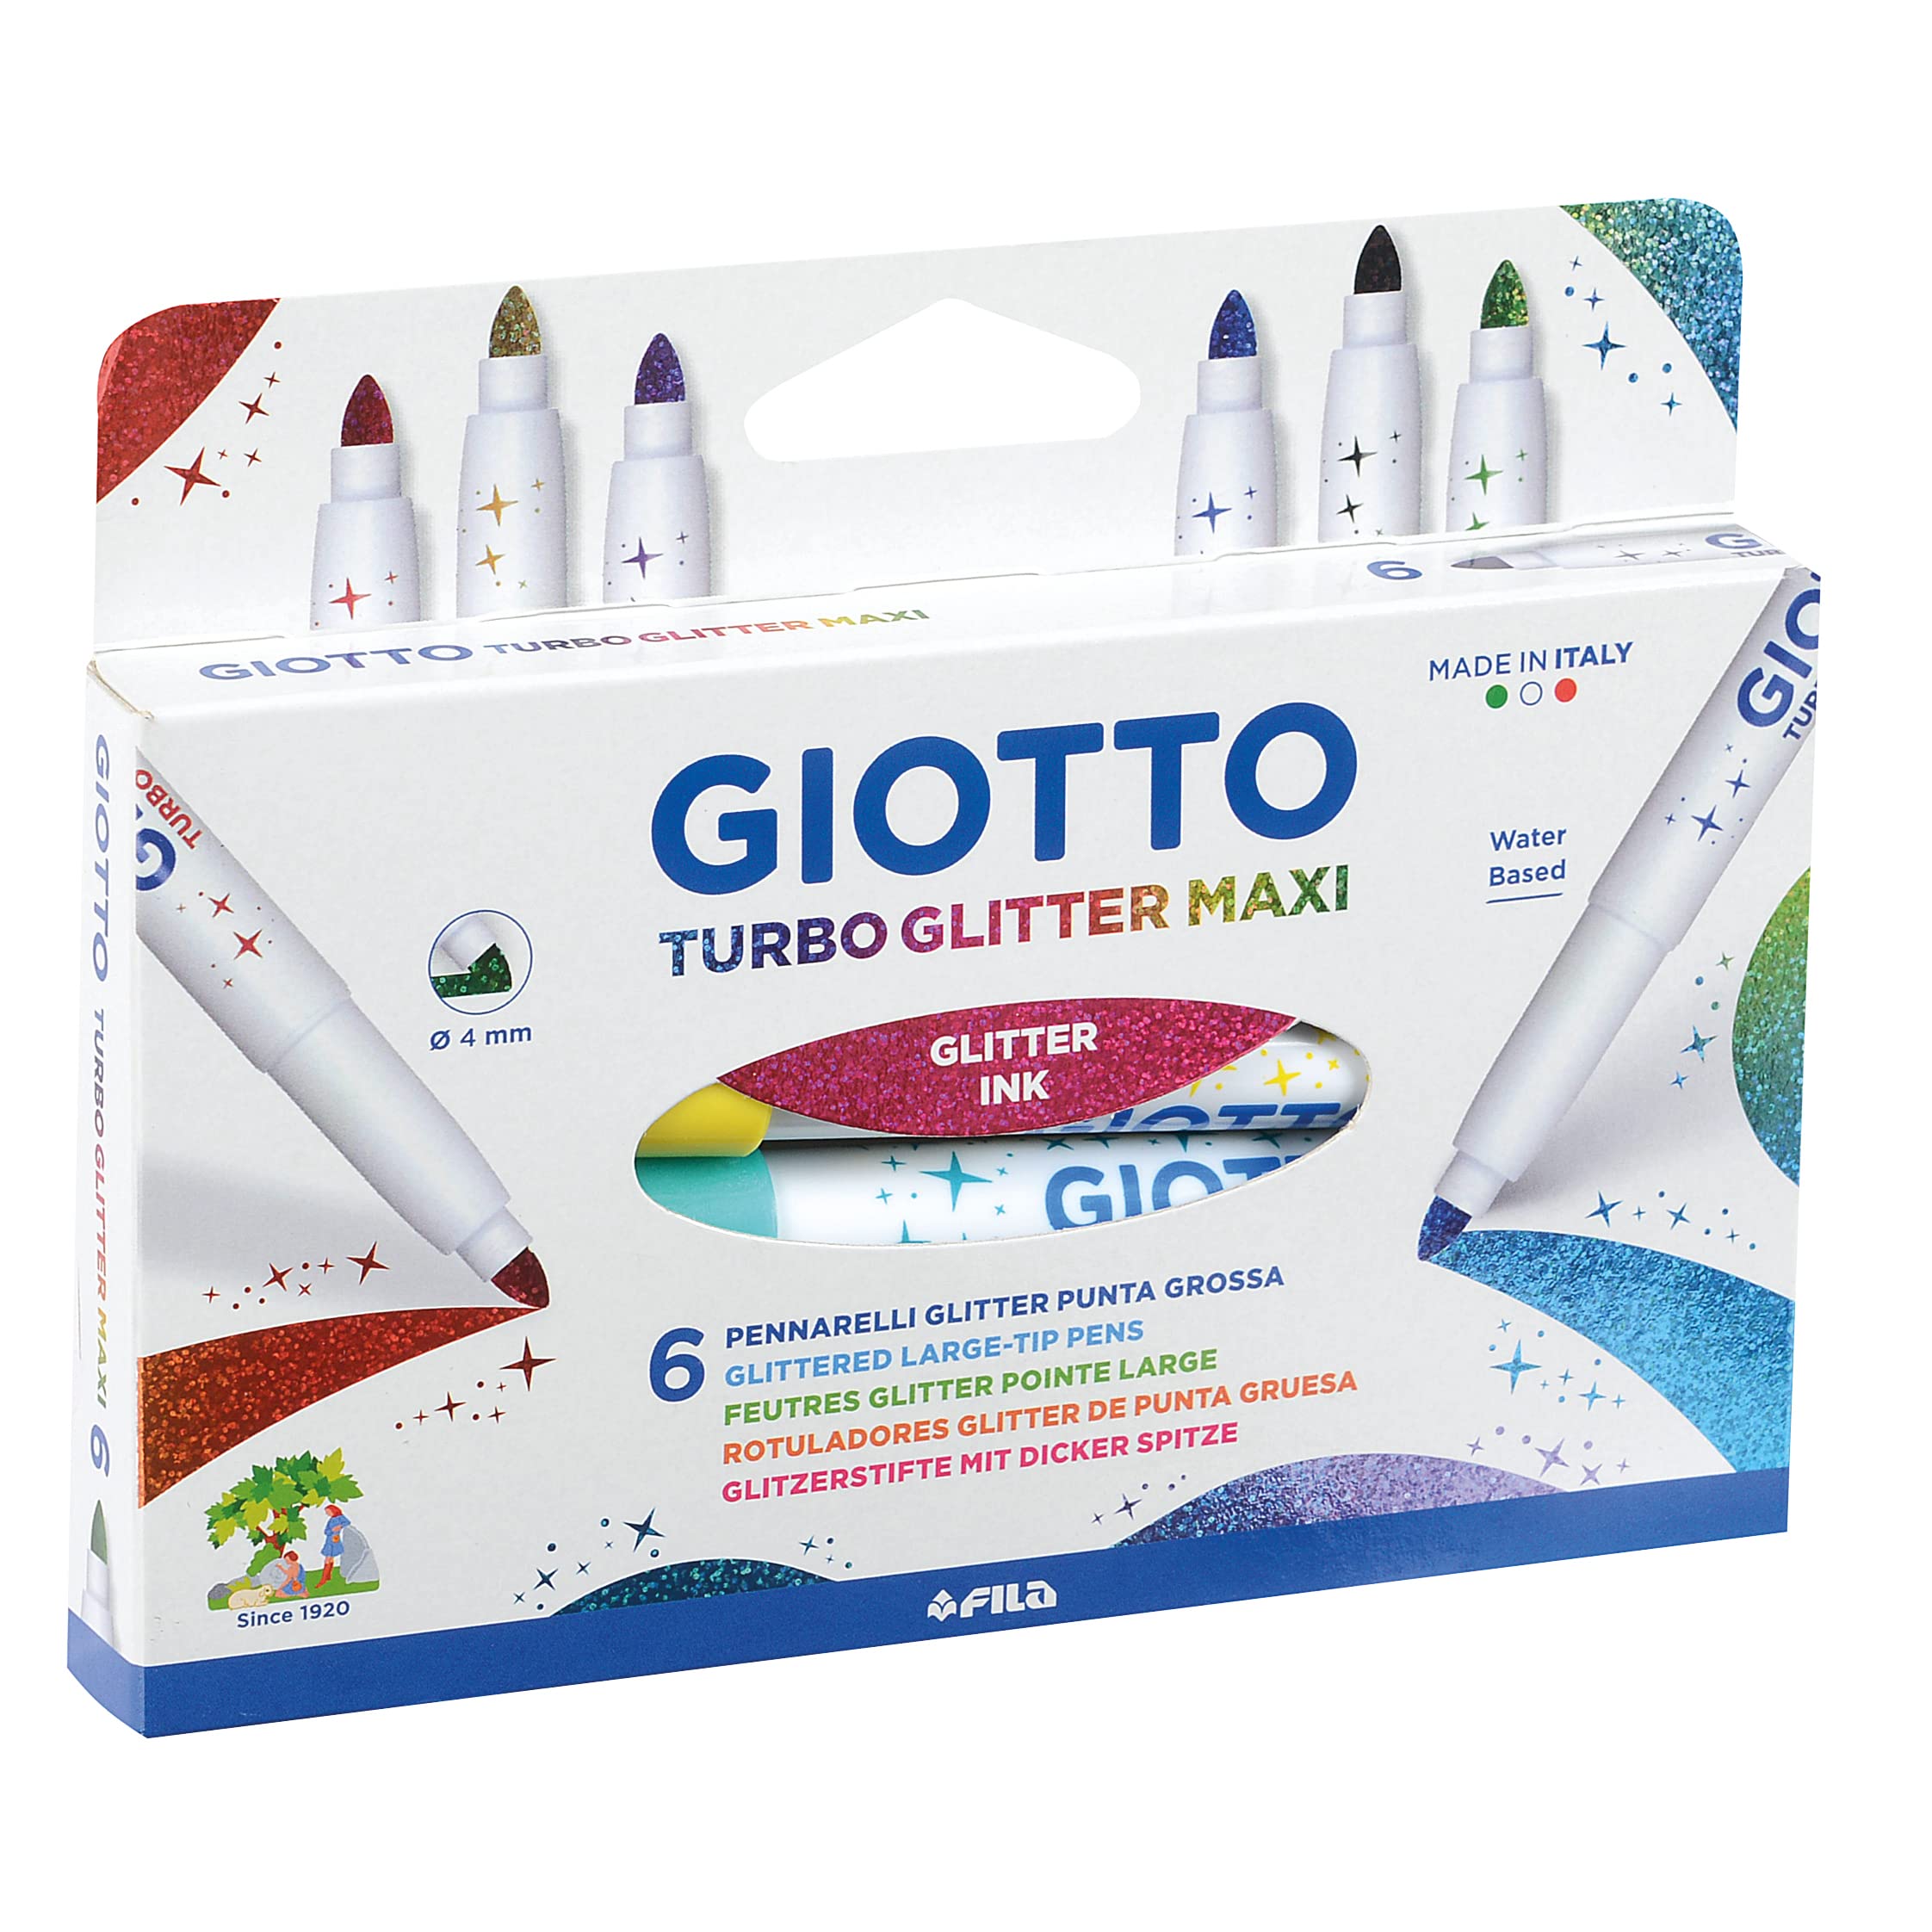 Pennarelli Giotto turbo glitter maxi